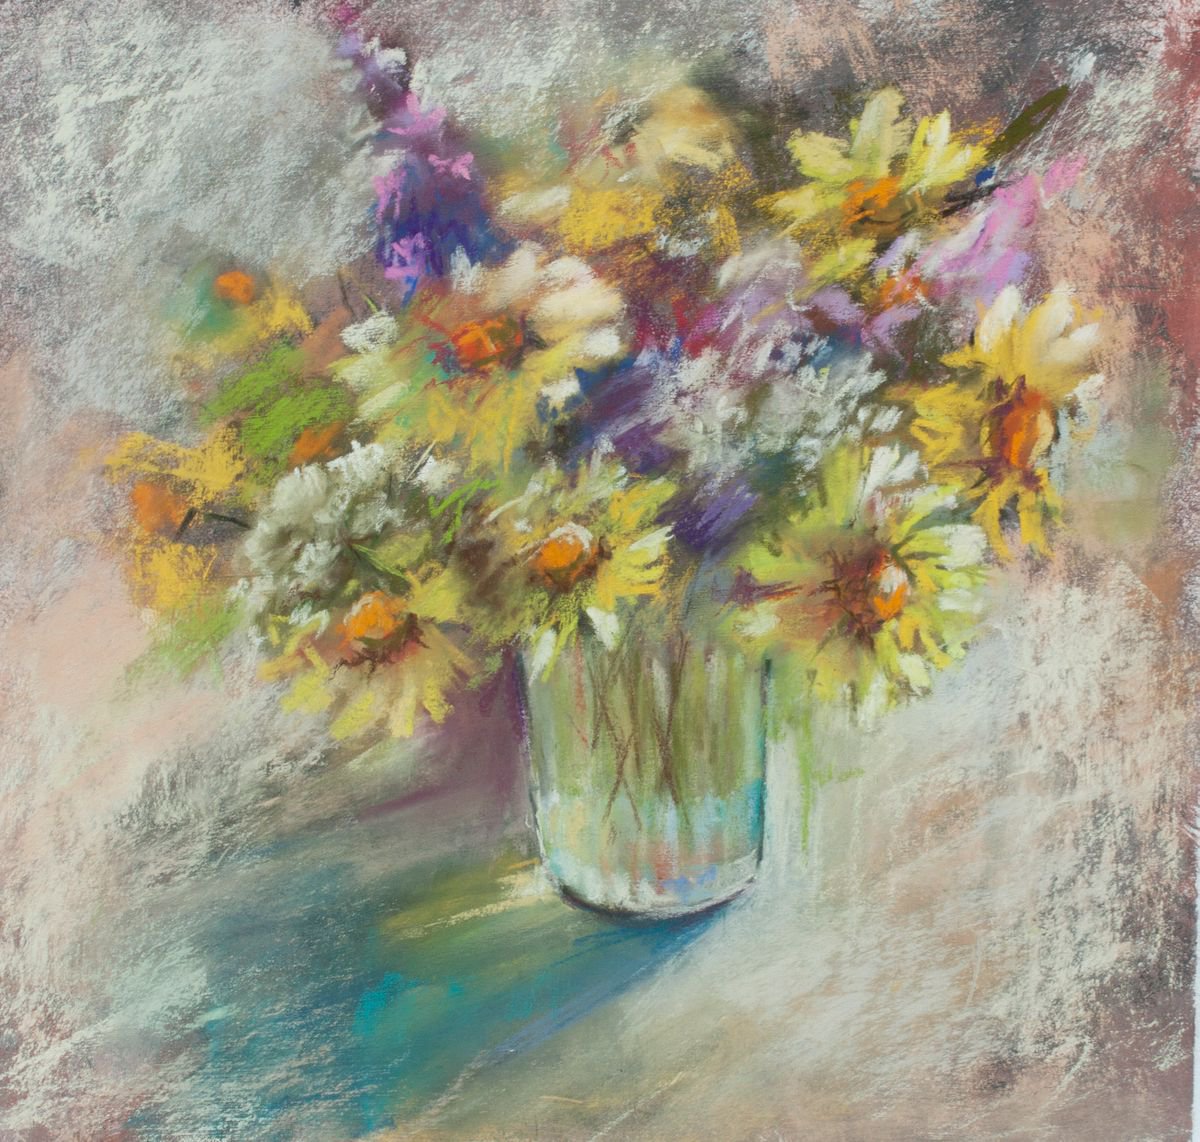 Field bouquet by Rina Gerdt